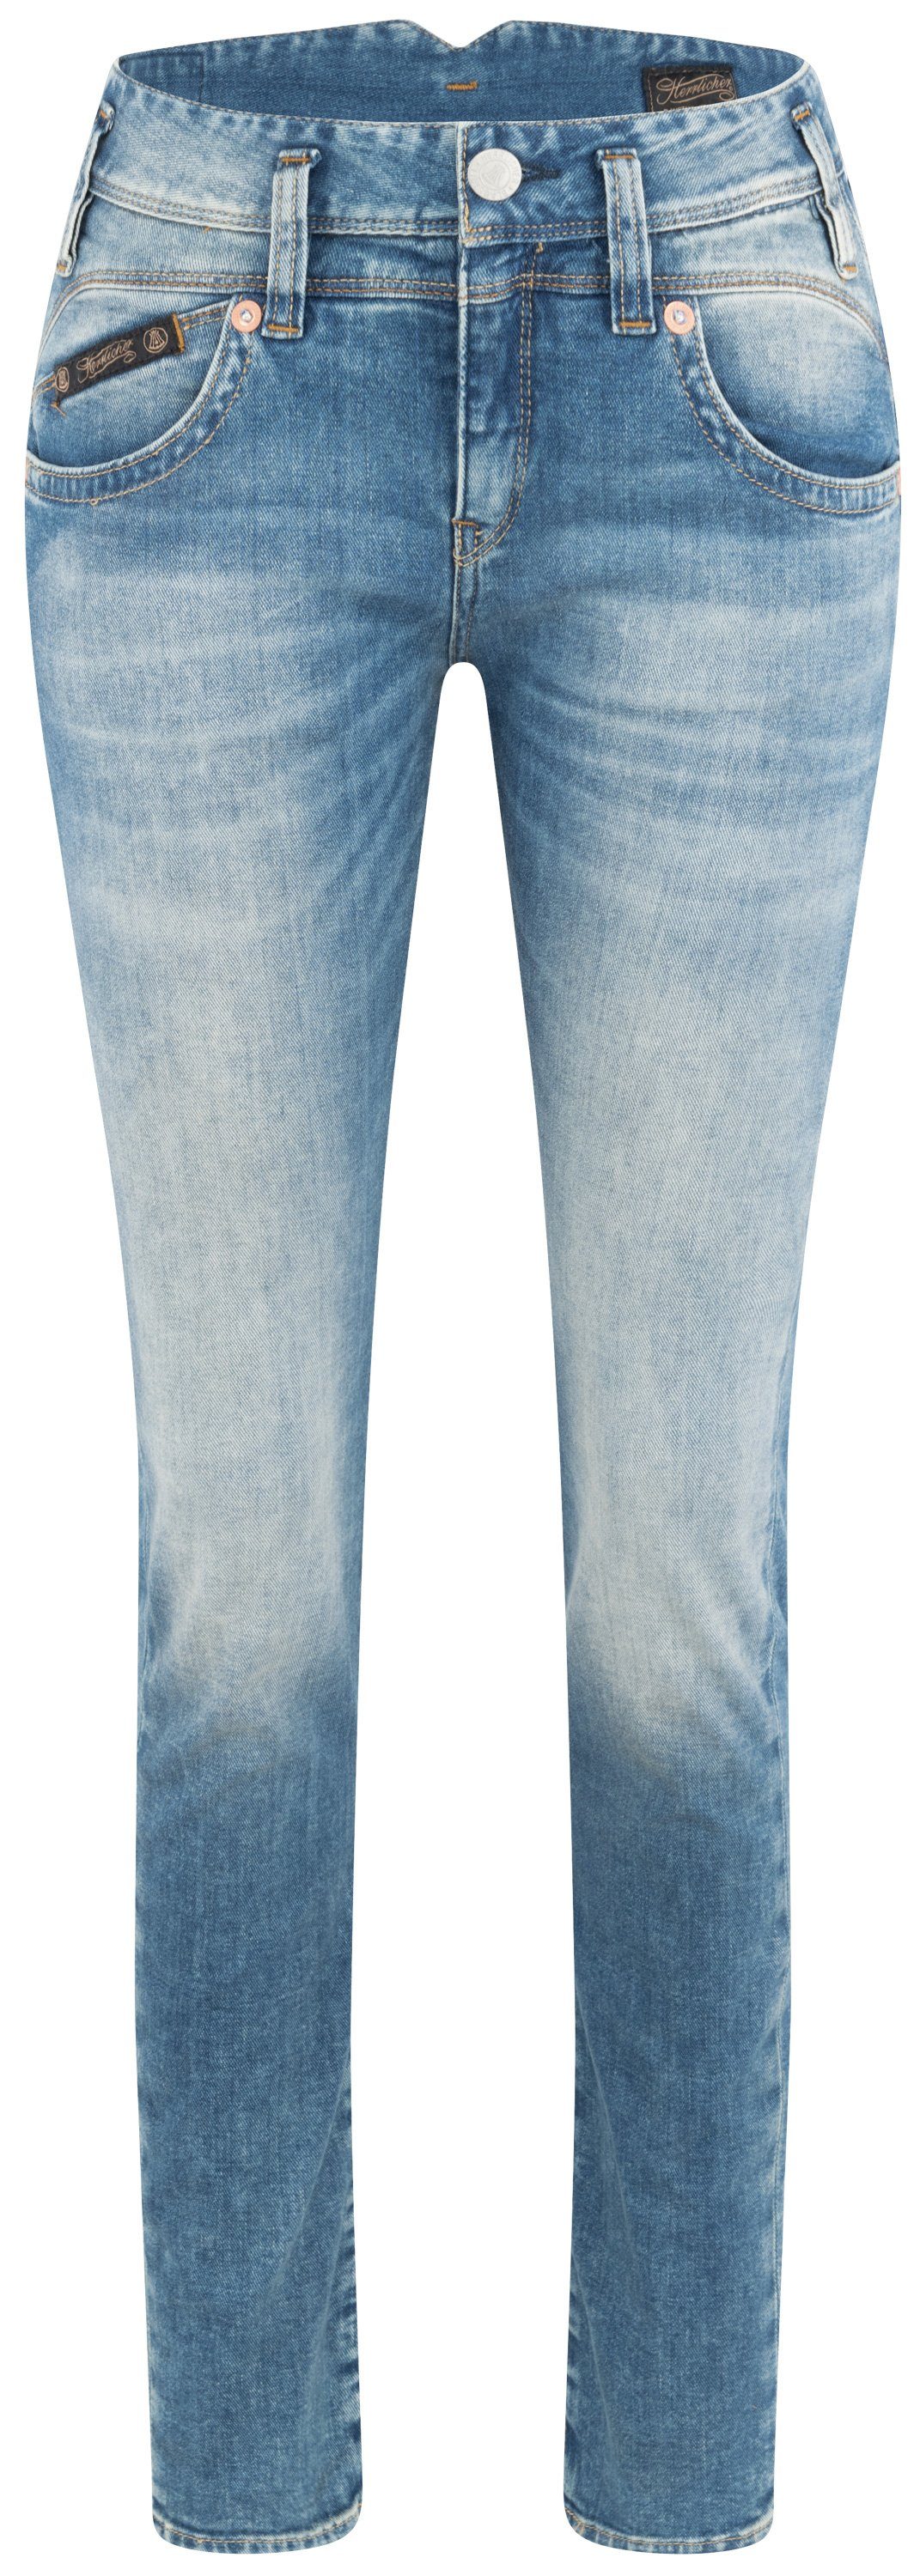 Herrlicher Stretch-Jeans HERRLICHER PEARL SLIM Organic Cashmere mariana blue 5692-OD902-833 | Stretchjeans